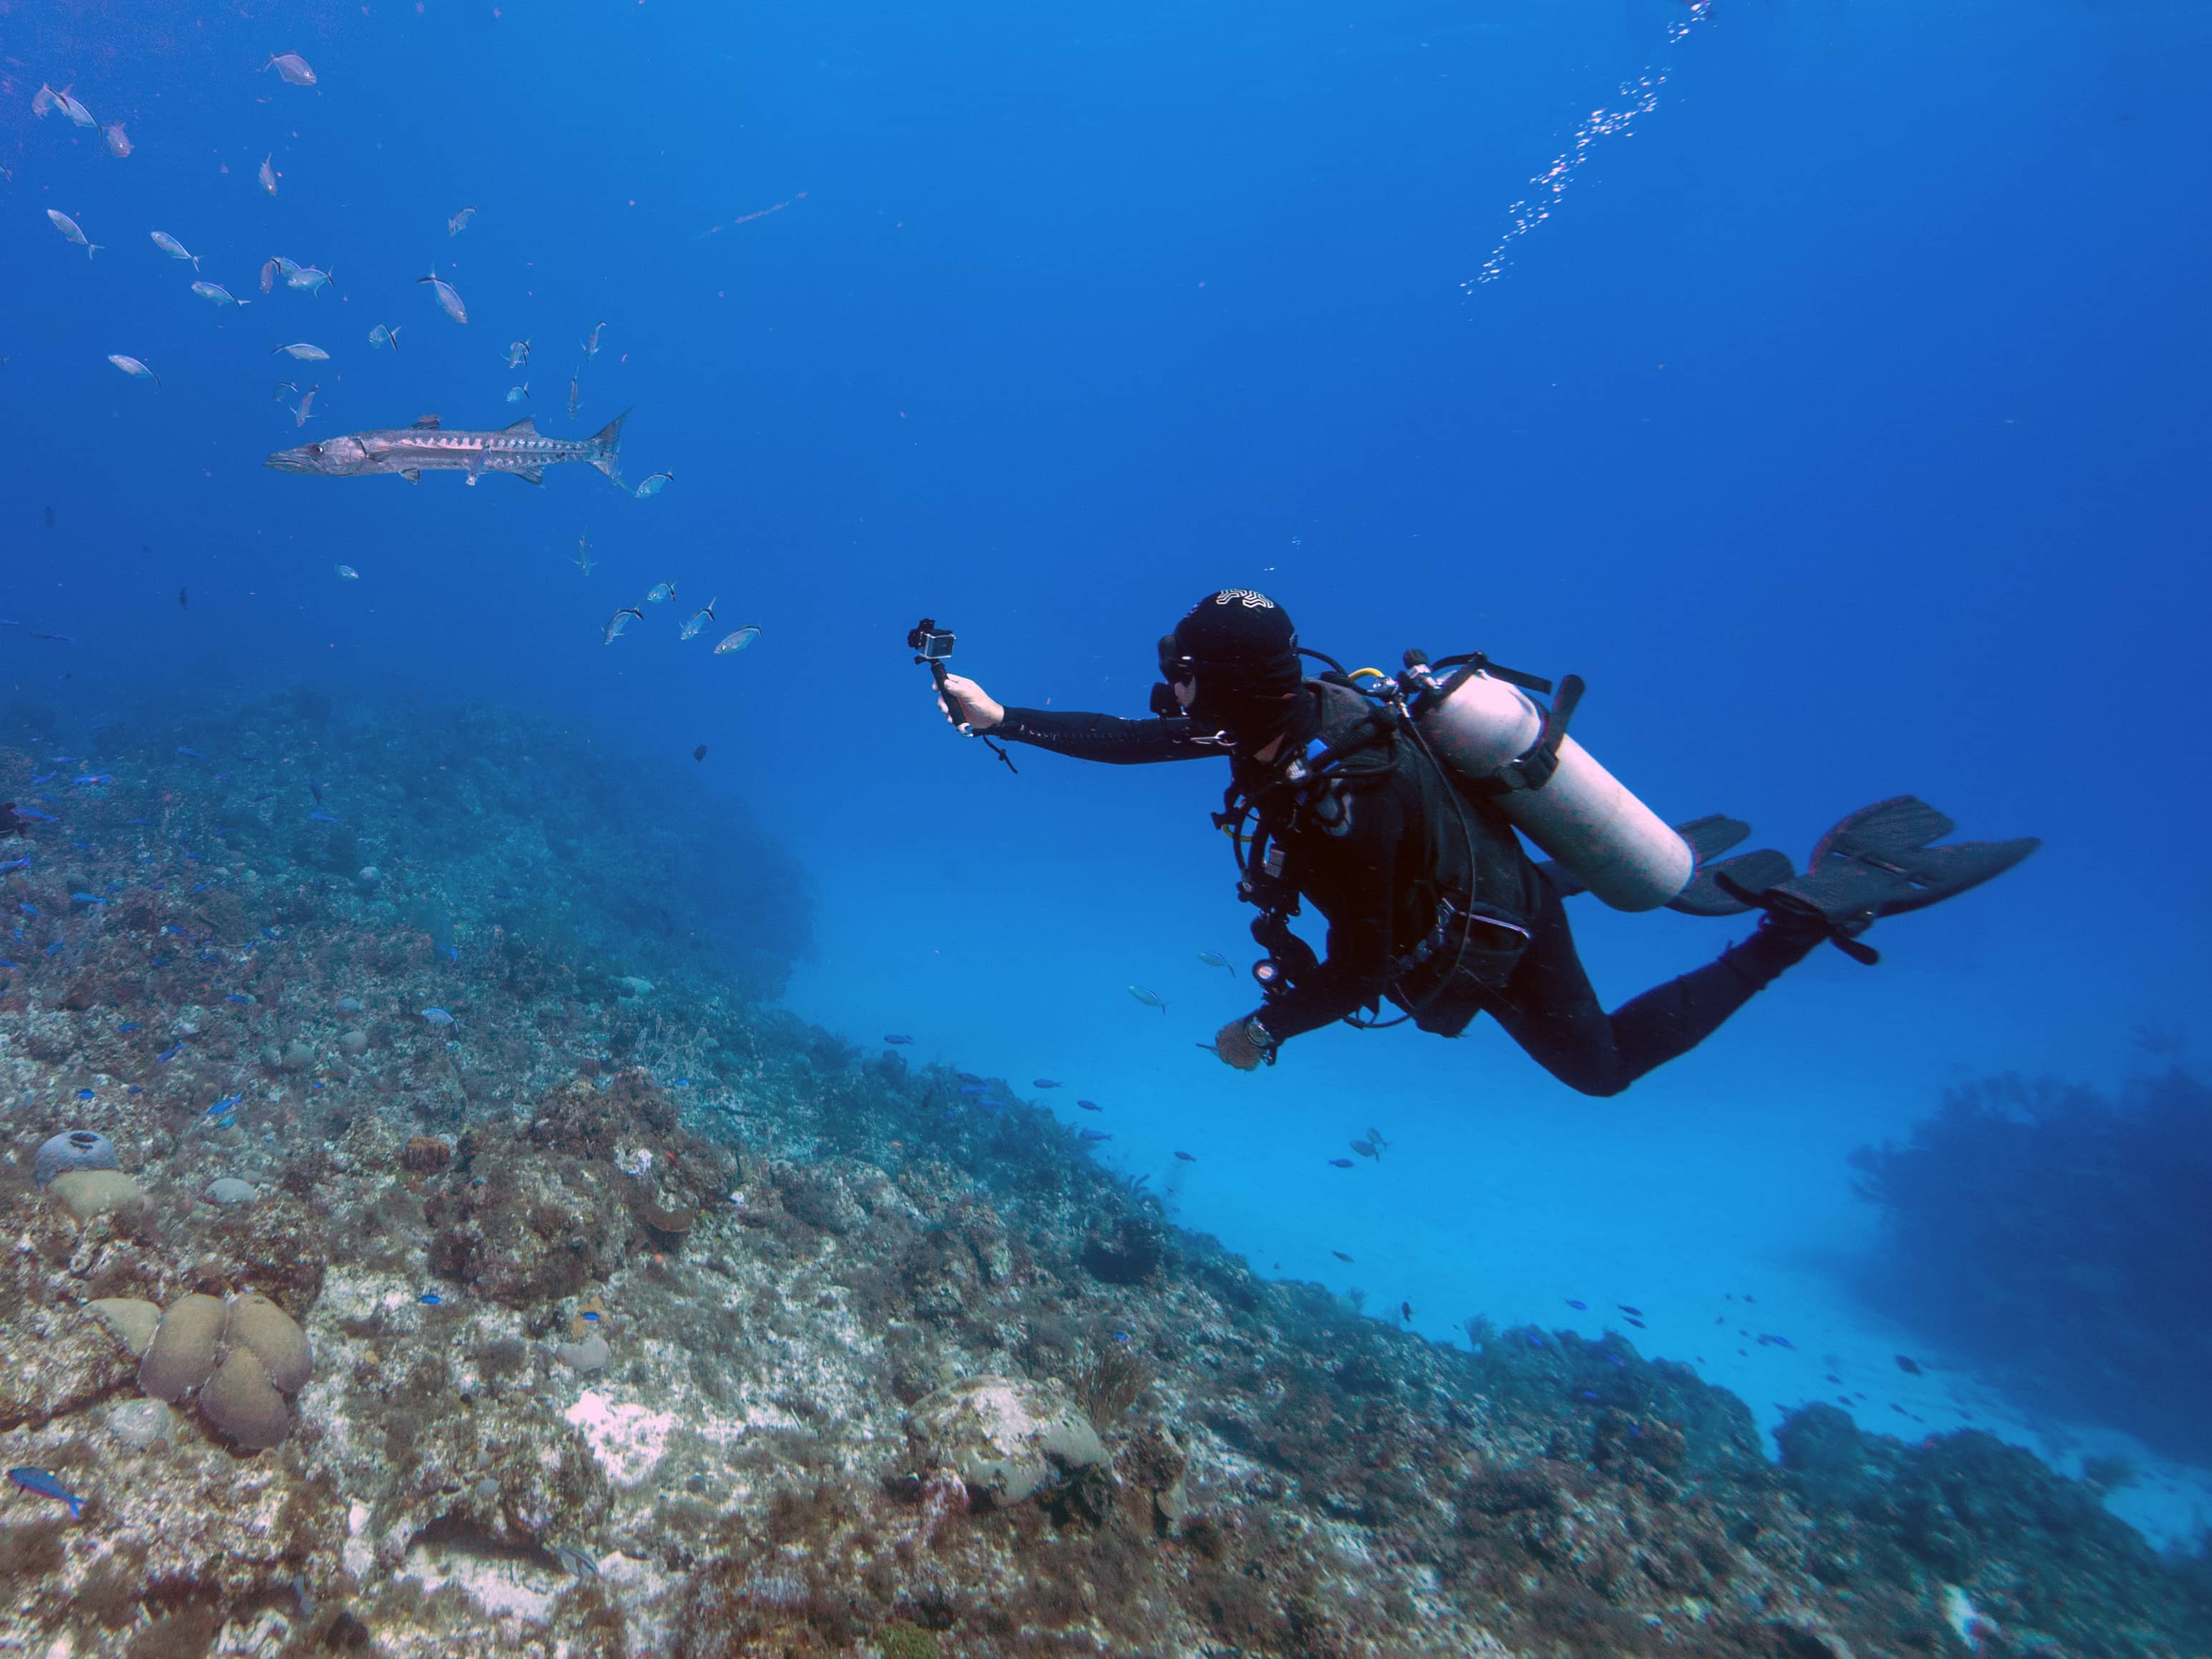 Plongez dans les eaux cristallines de Tenerife et initiez-vous à la plongée sous-marine ou redécouvrez cette passion pendant vos vacances.&nbsp;